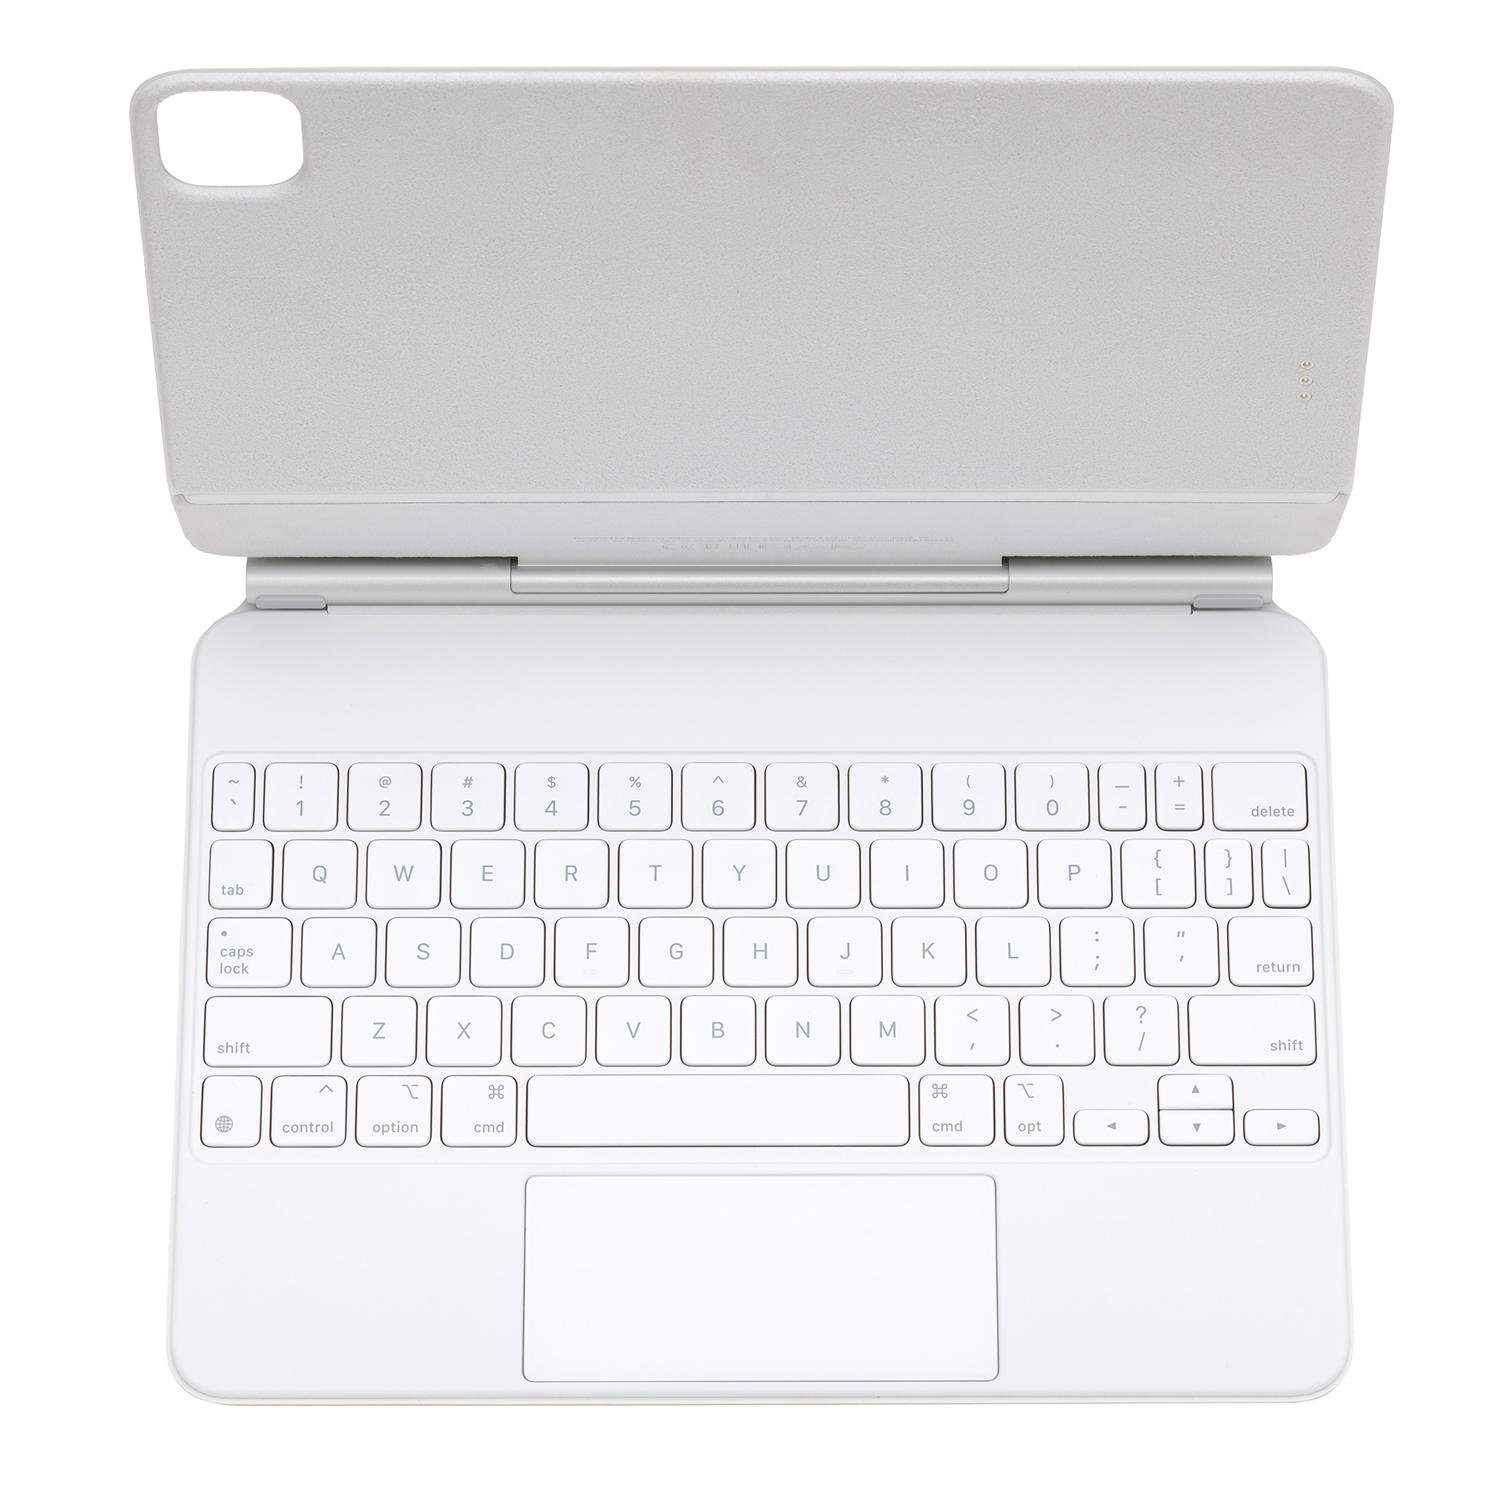 Apple MJQJ3LL/A Magic Keyboard with Trackpad... at MacSales.com